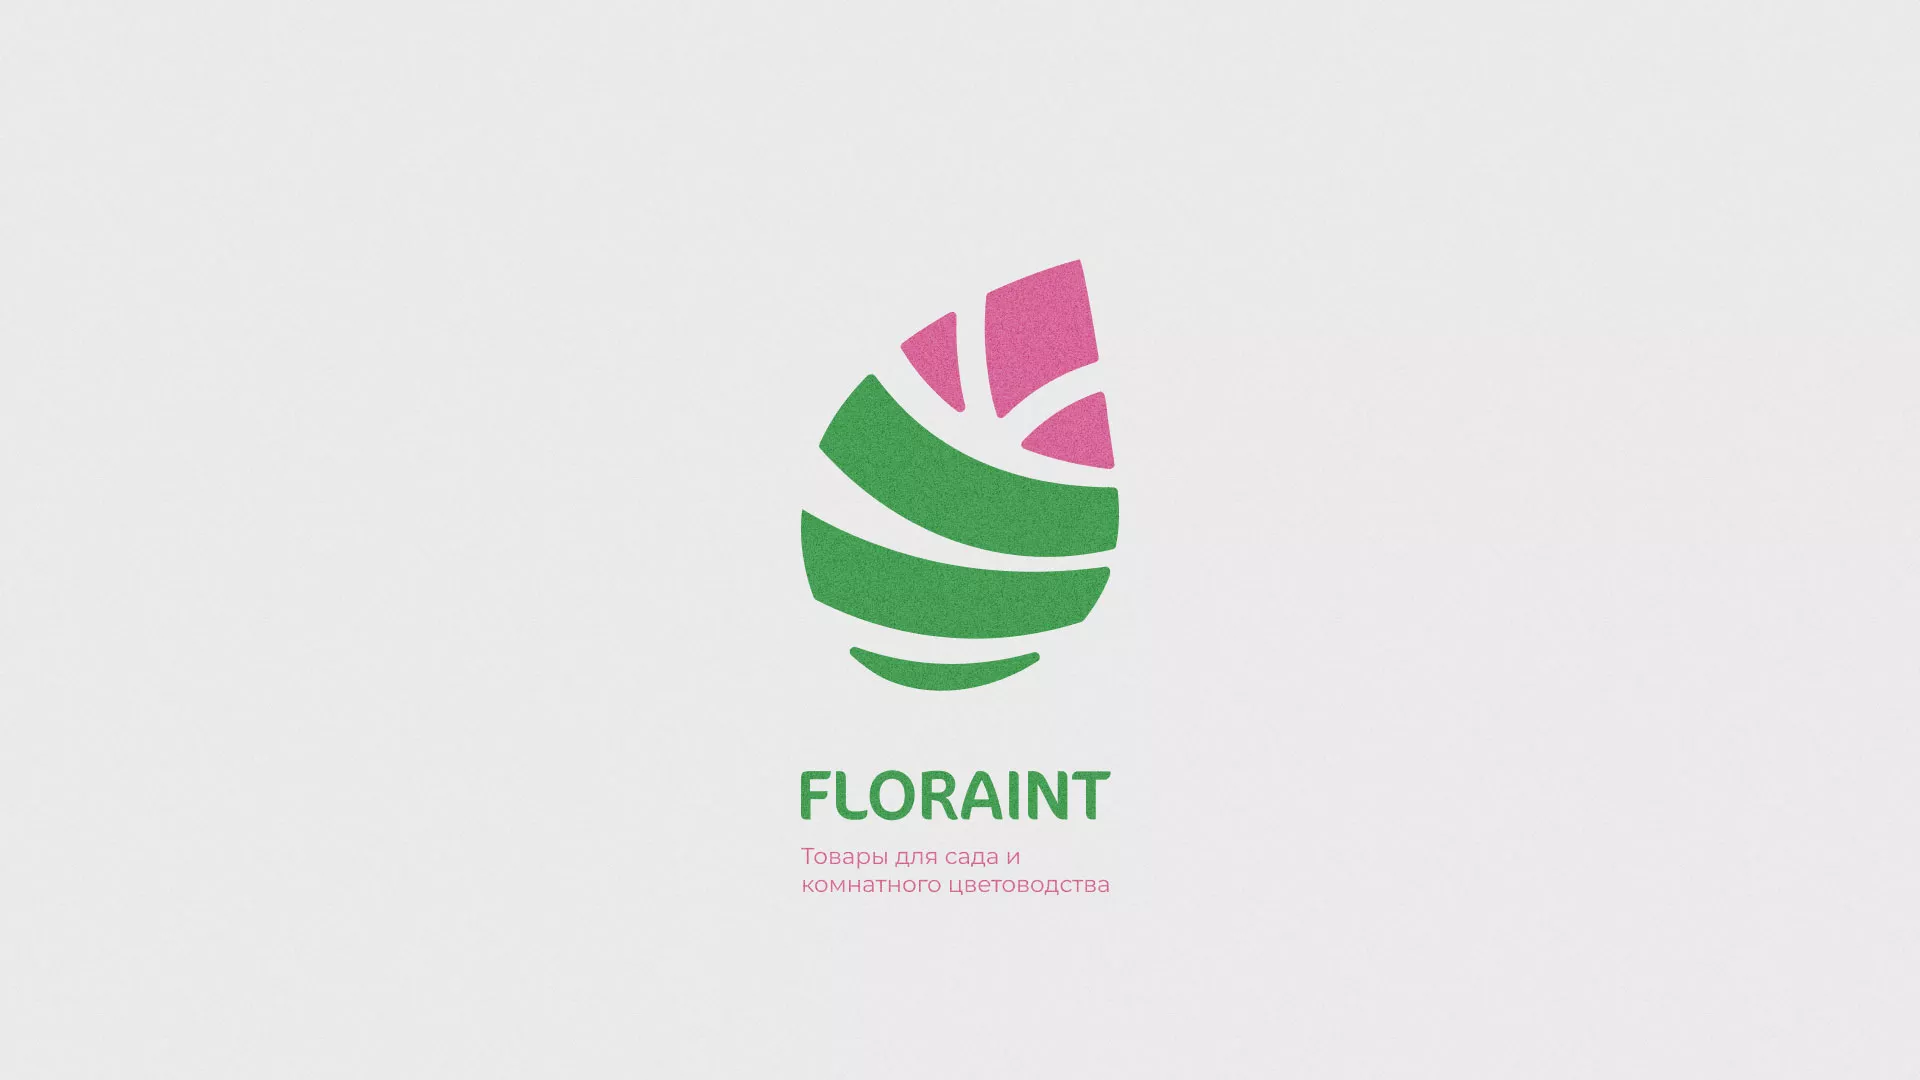 Разработка оформления профиля Instagram для магазина «Floraint» в Макарове